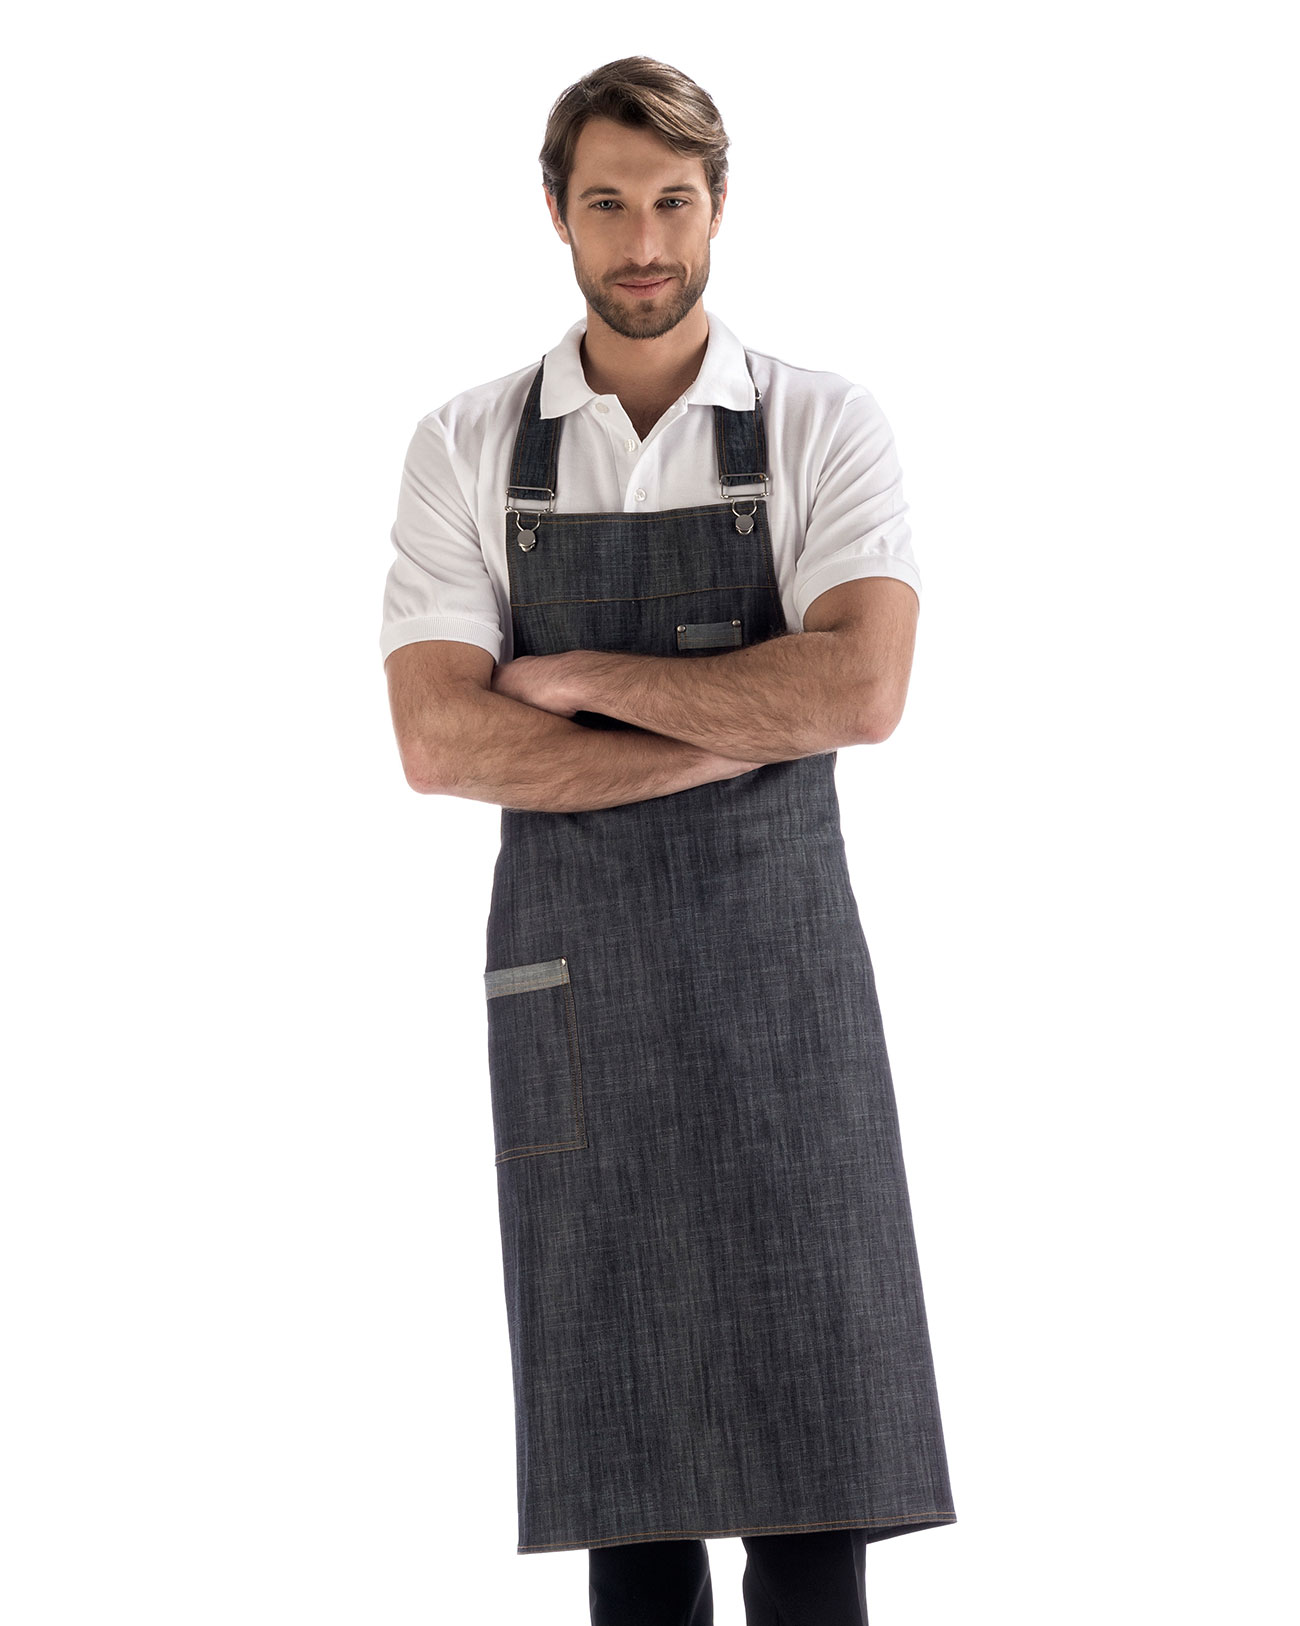 Per donna uomo Chef grembiule da lavoro New Fashion Canvas grembiuli da  cucina per Grill ristorante Bar negozio caffè bellezza unghie studi uniforme